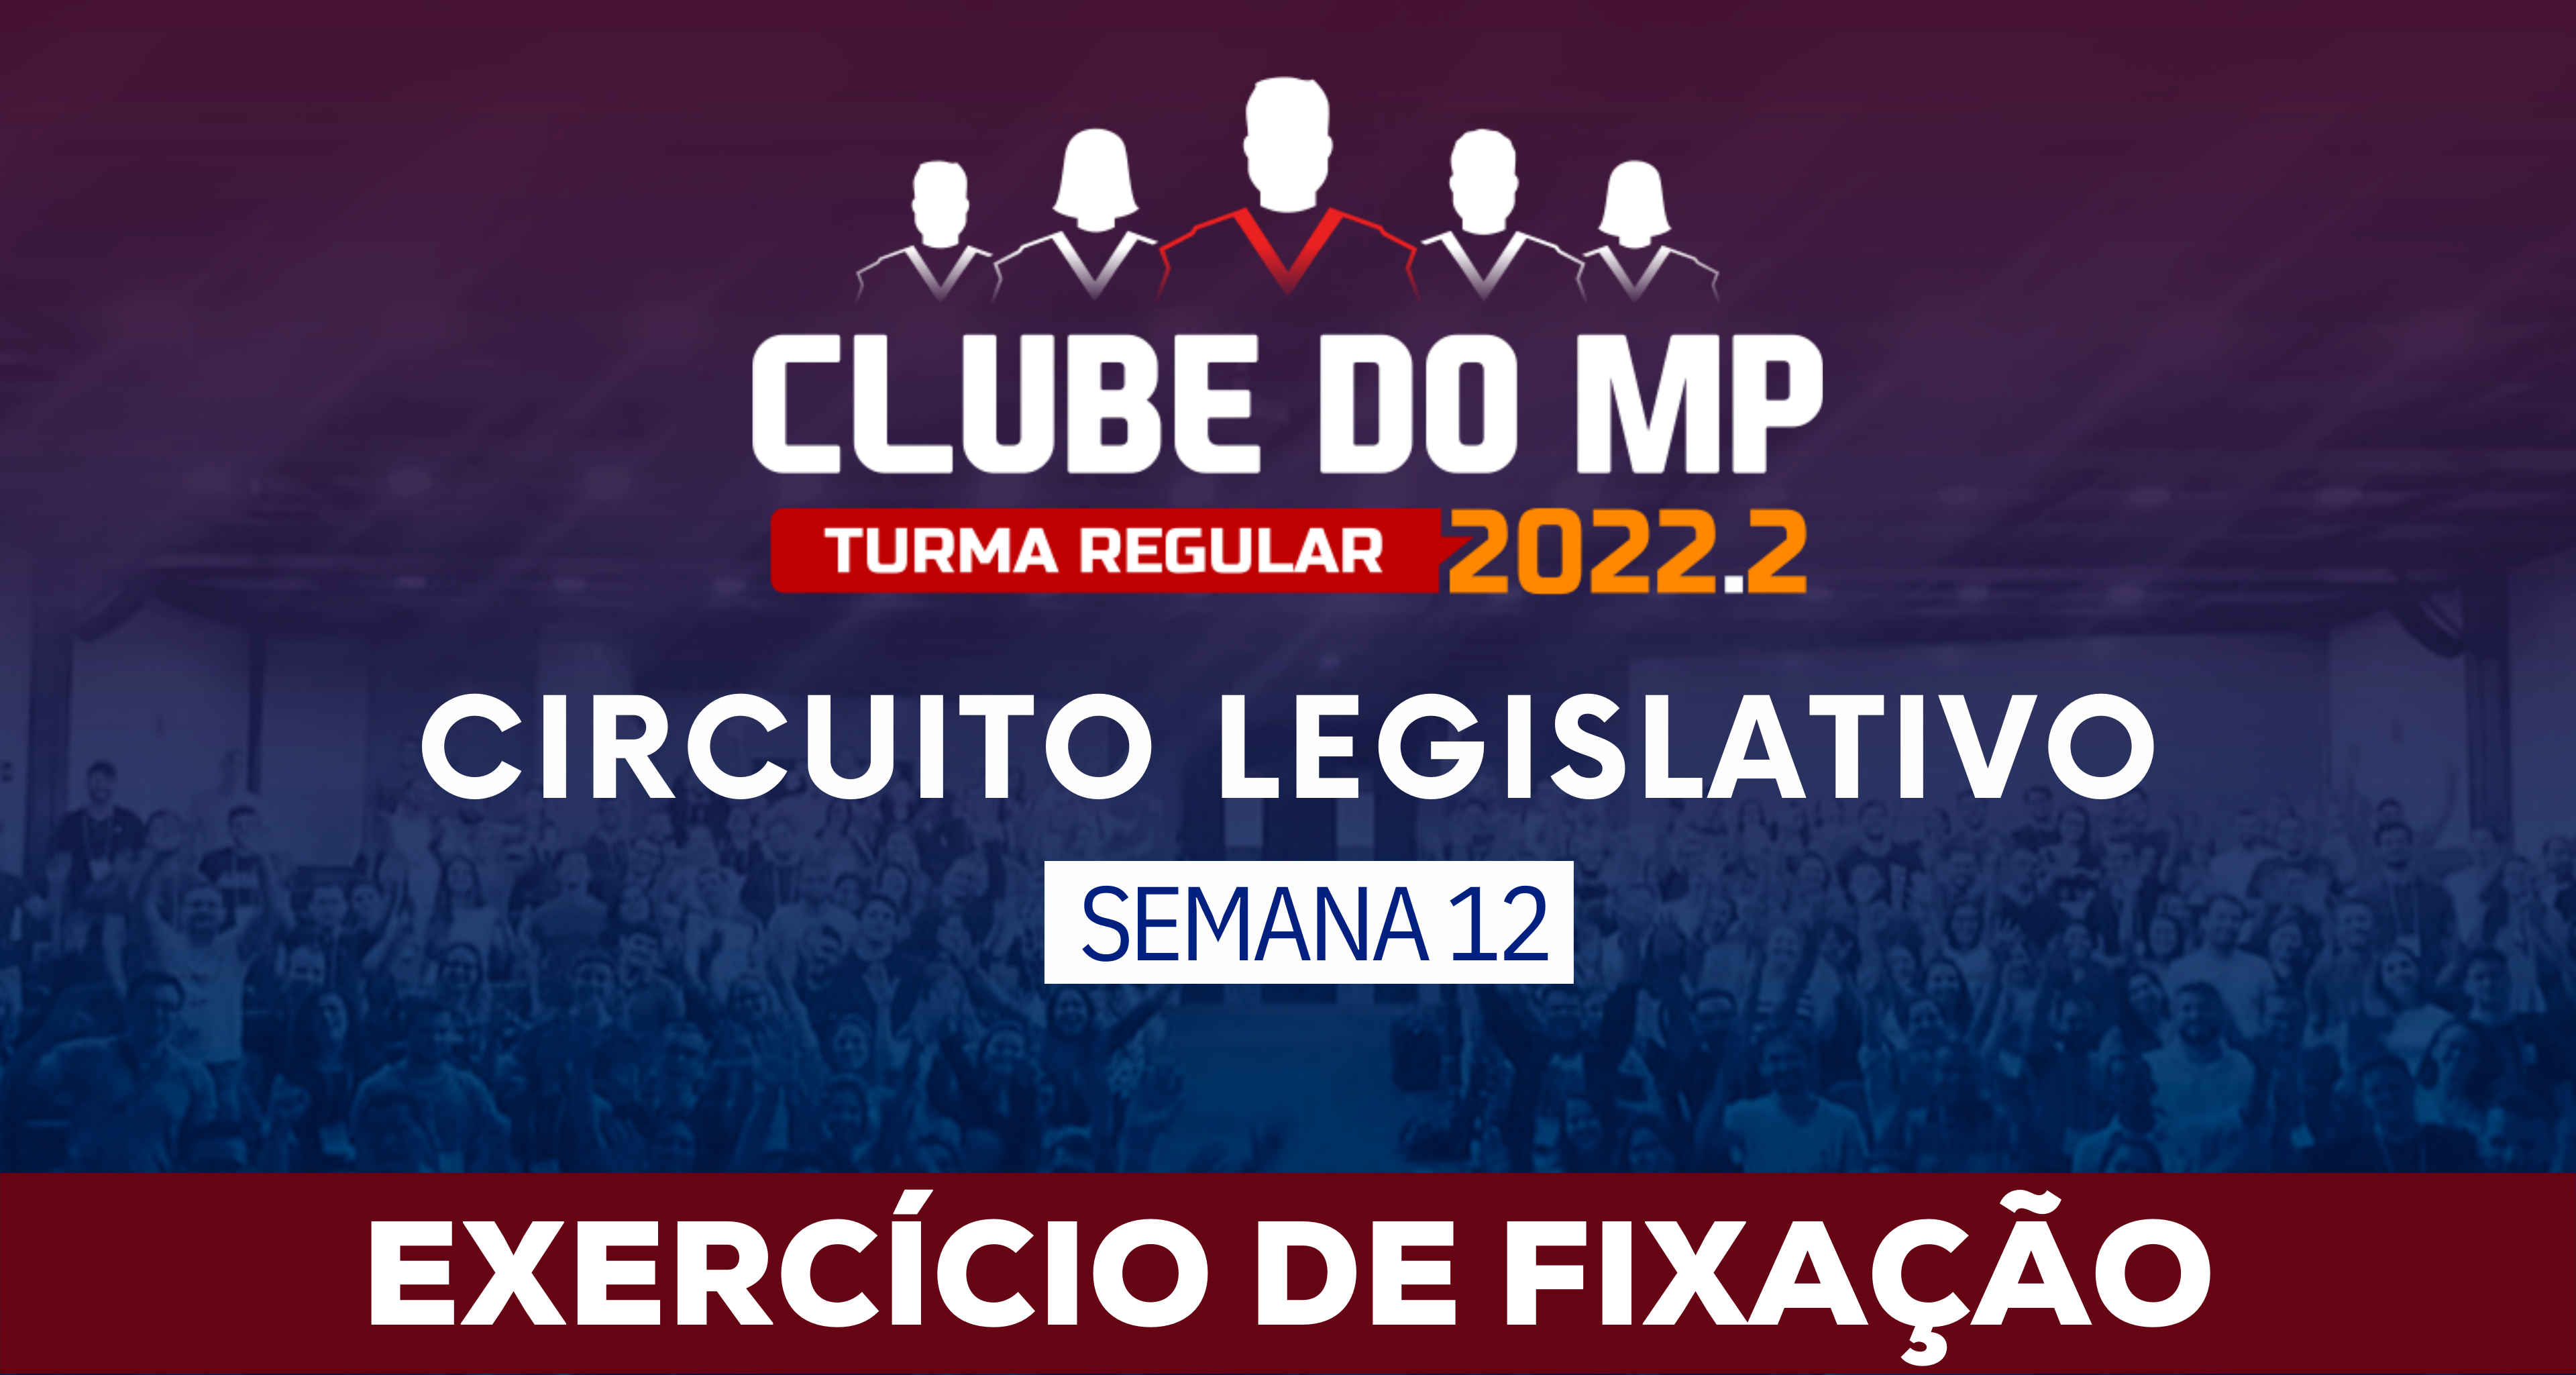 Circuito Legislativo 2022.2 (Clube do MP - Semana 12)